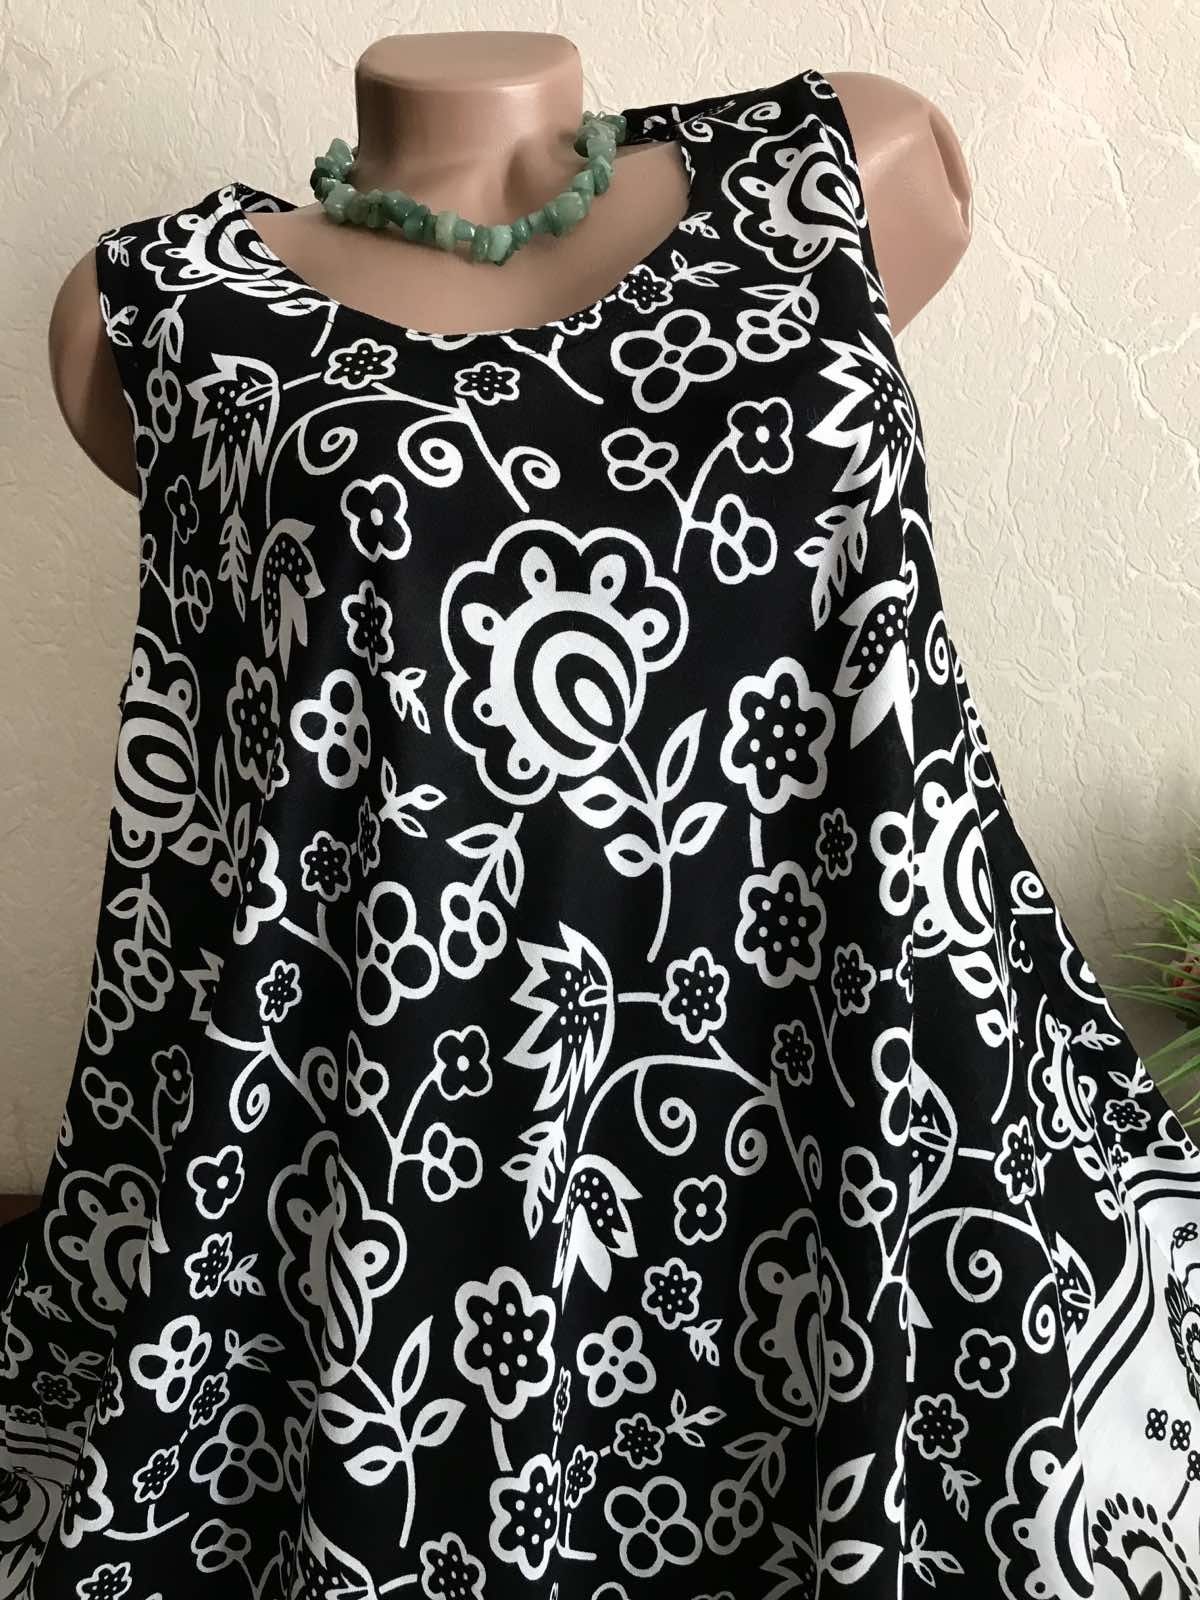 Стильный сарафан-платье НАТУРАЛЬНЫЕ ткани 48-60р Индия оригинал